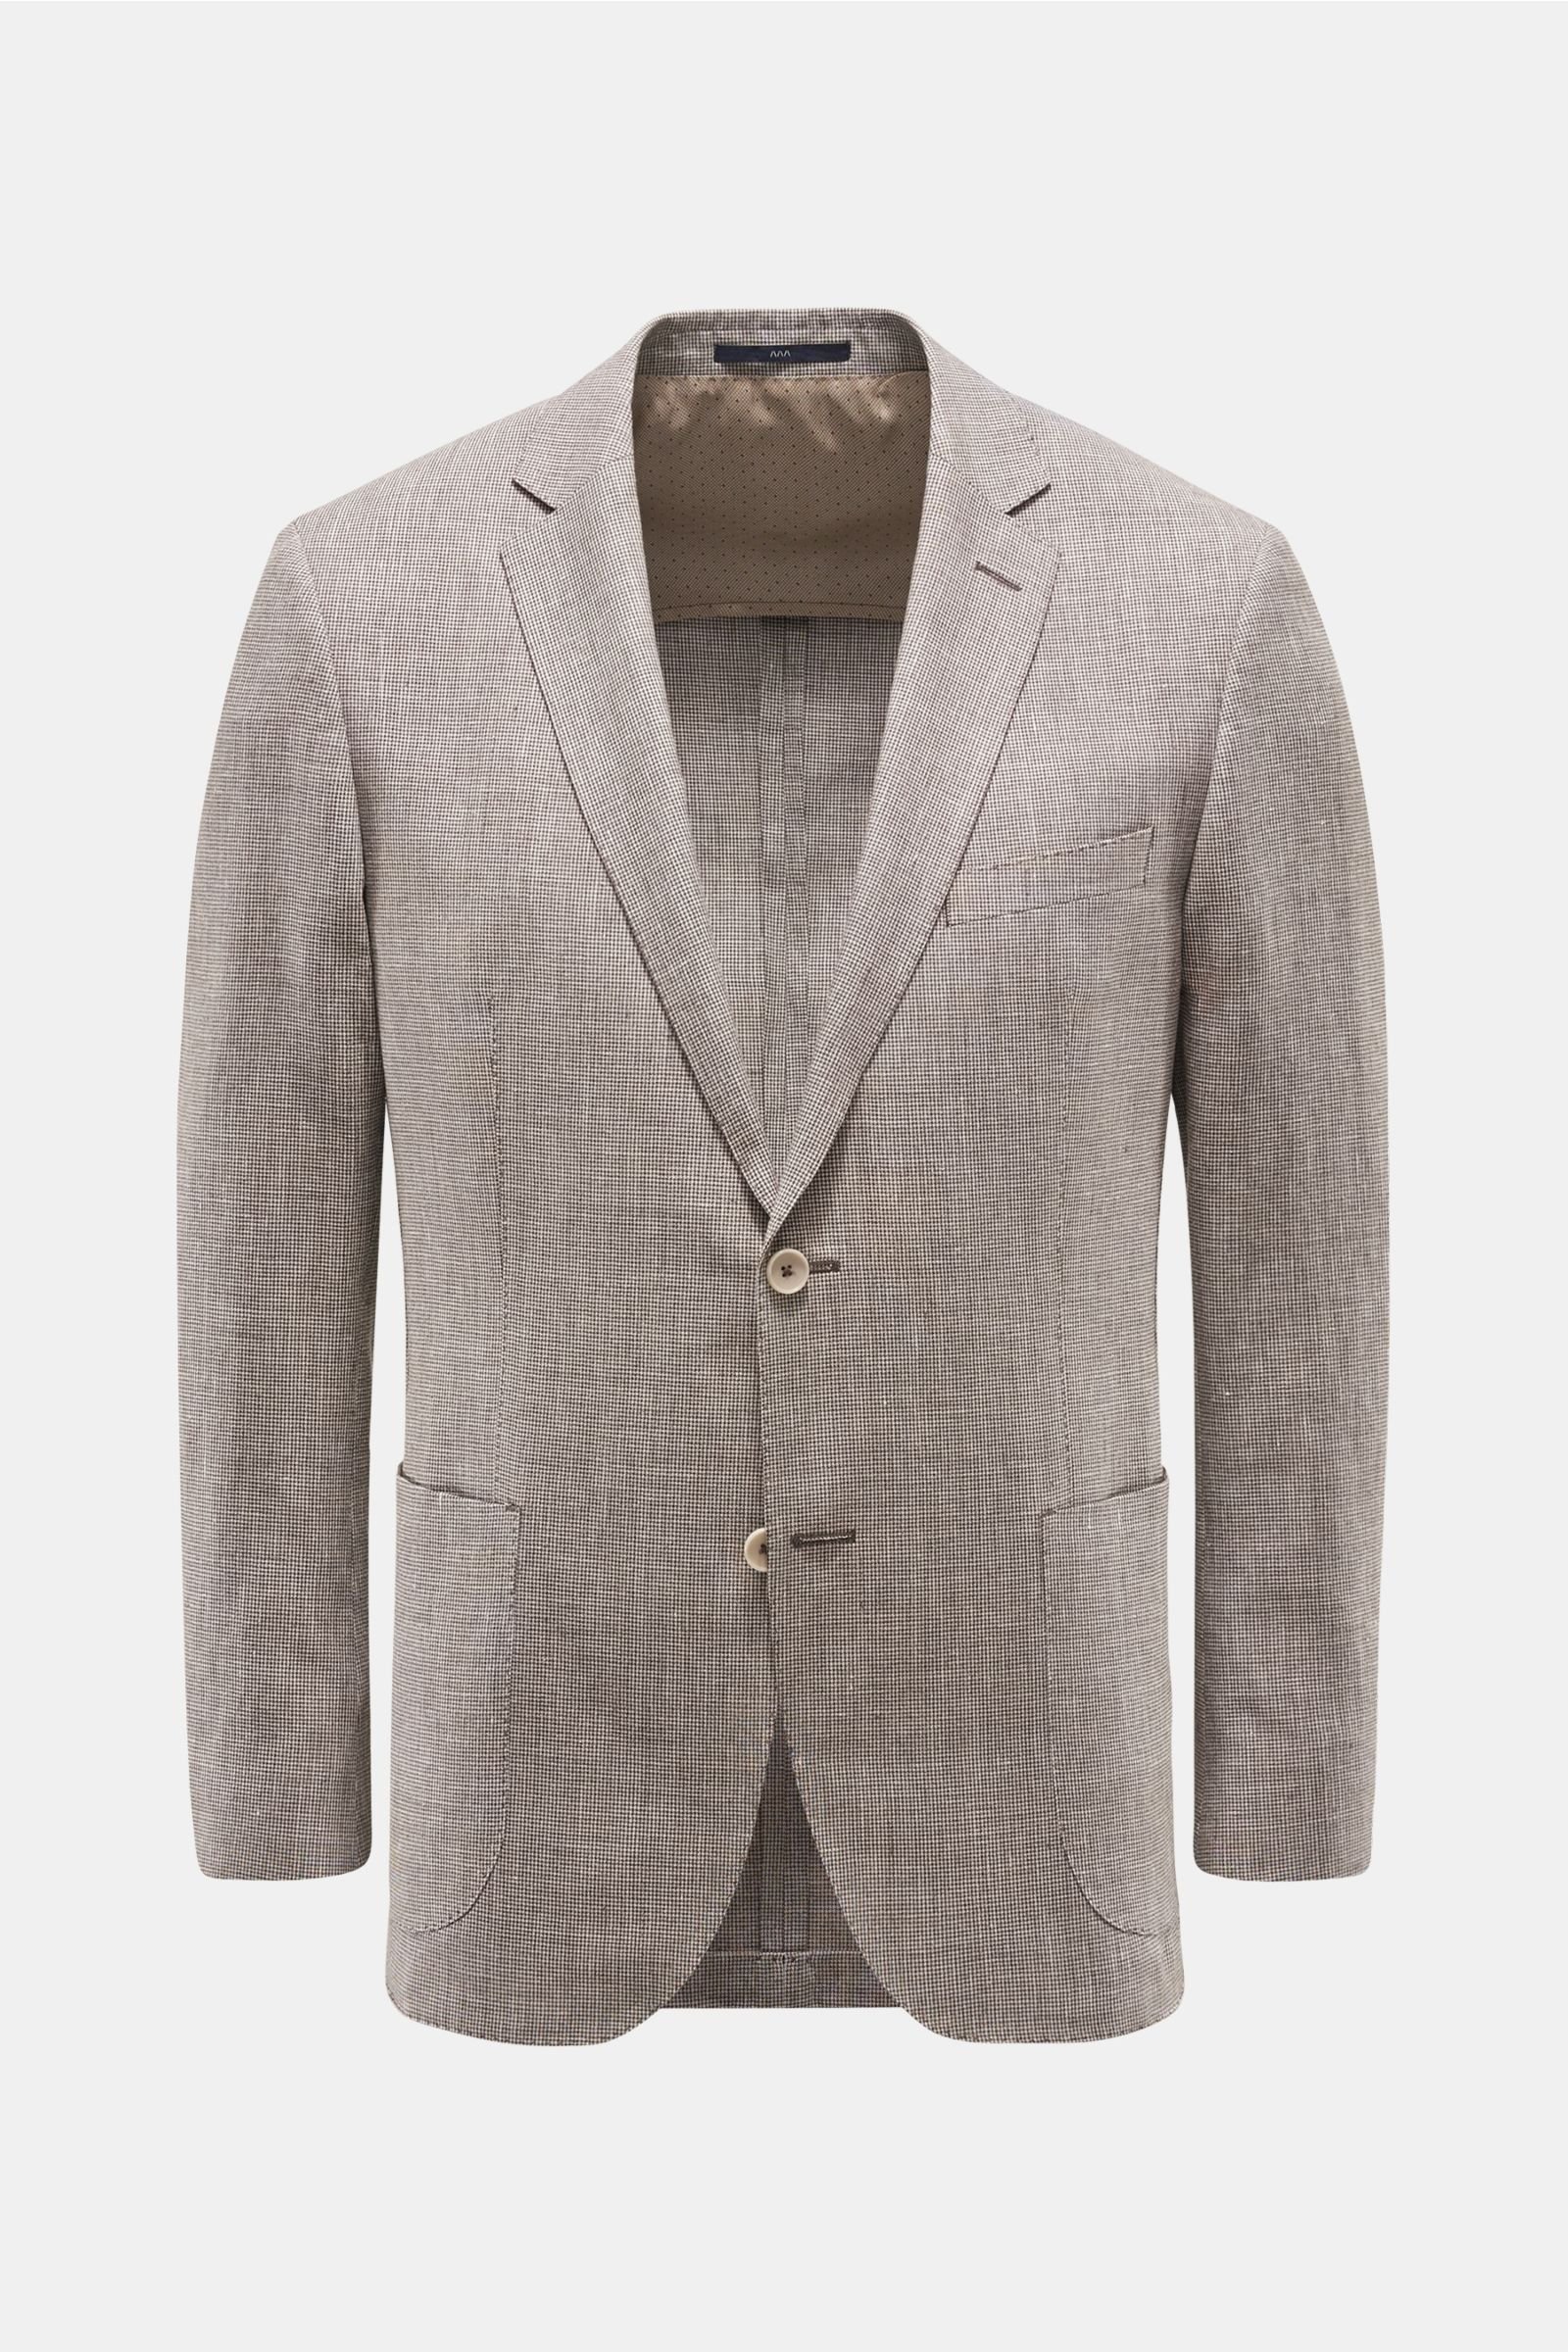 Smart-casual jacket 'Sendrik' beige/dark brown checked